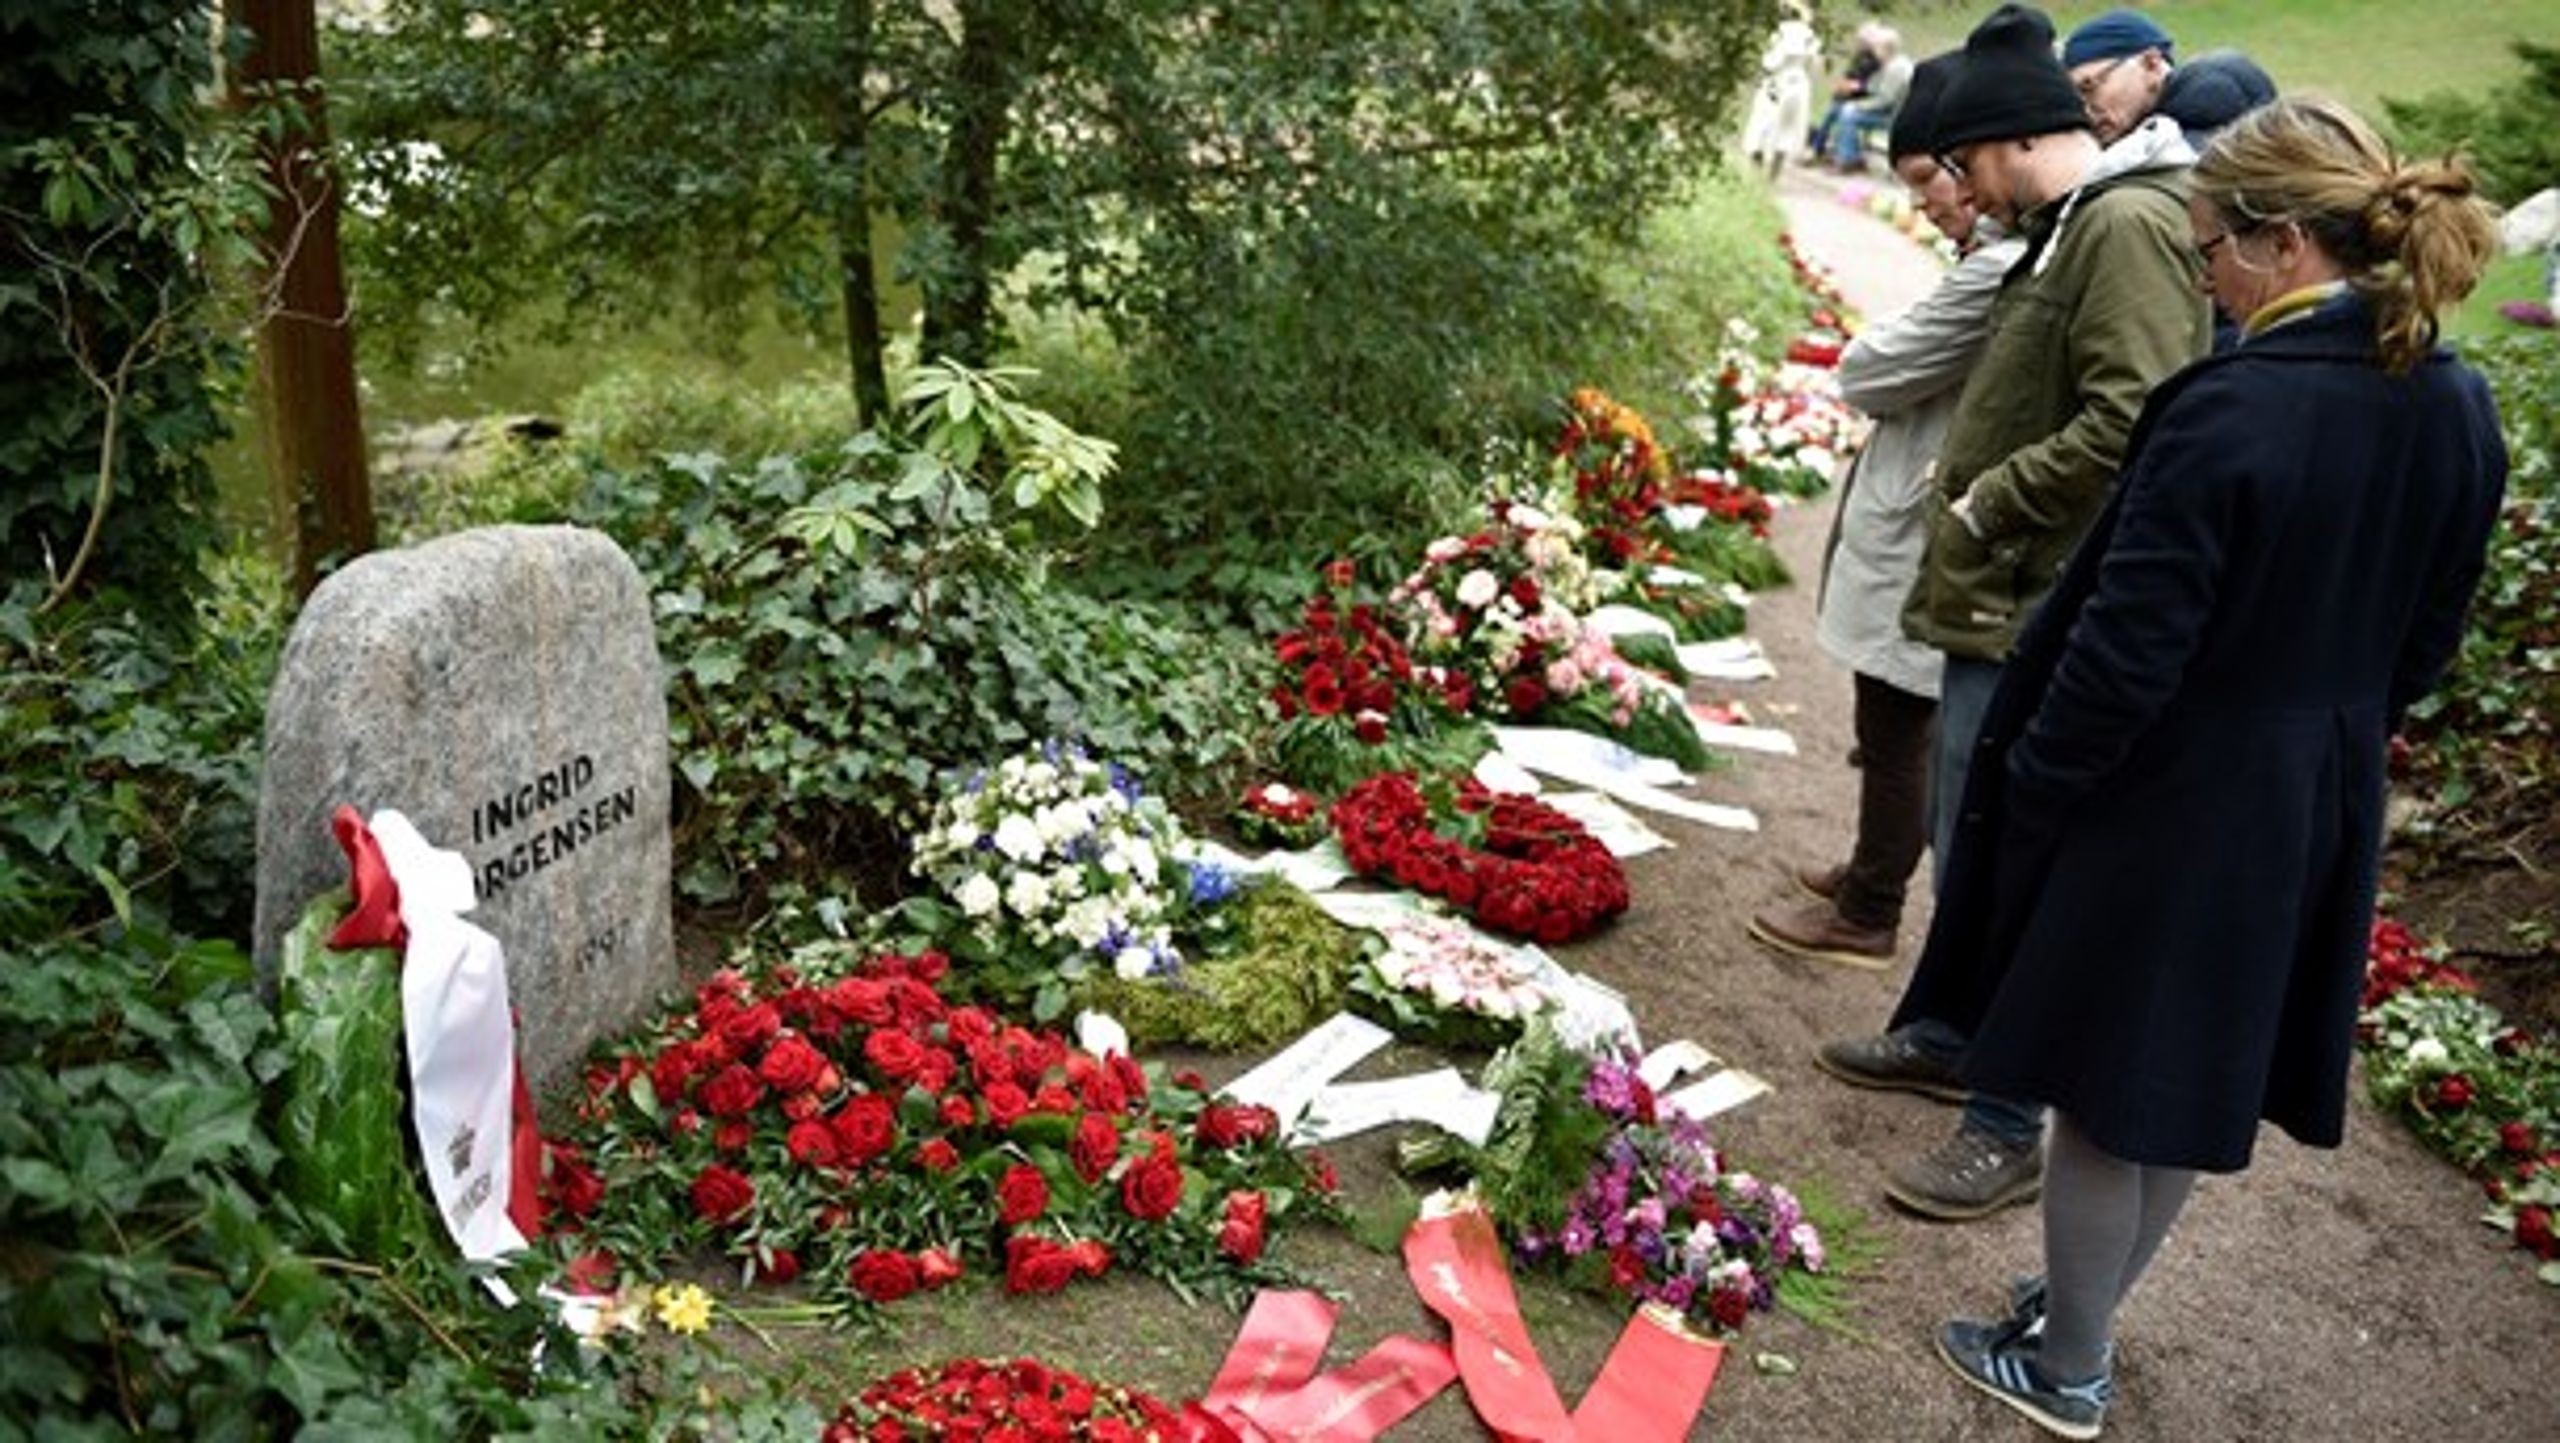 Besøgende kigger på blomster og bårebuketter på&nbsp;Vestre Kirkegård dagen efter bisættelsen af tidligere statsminister Anker Jørgensen i april 2016.